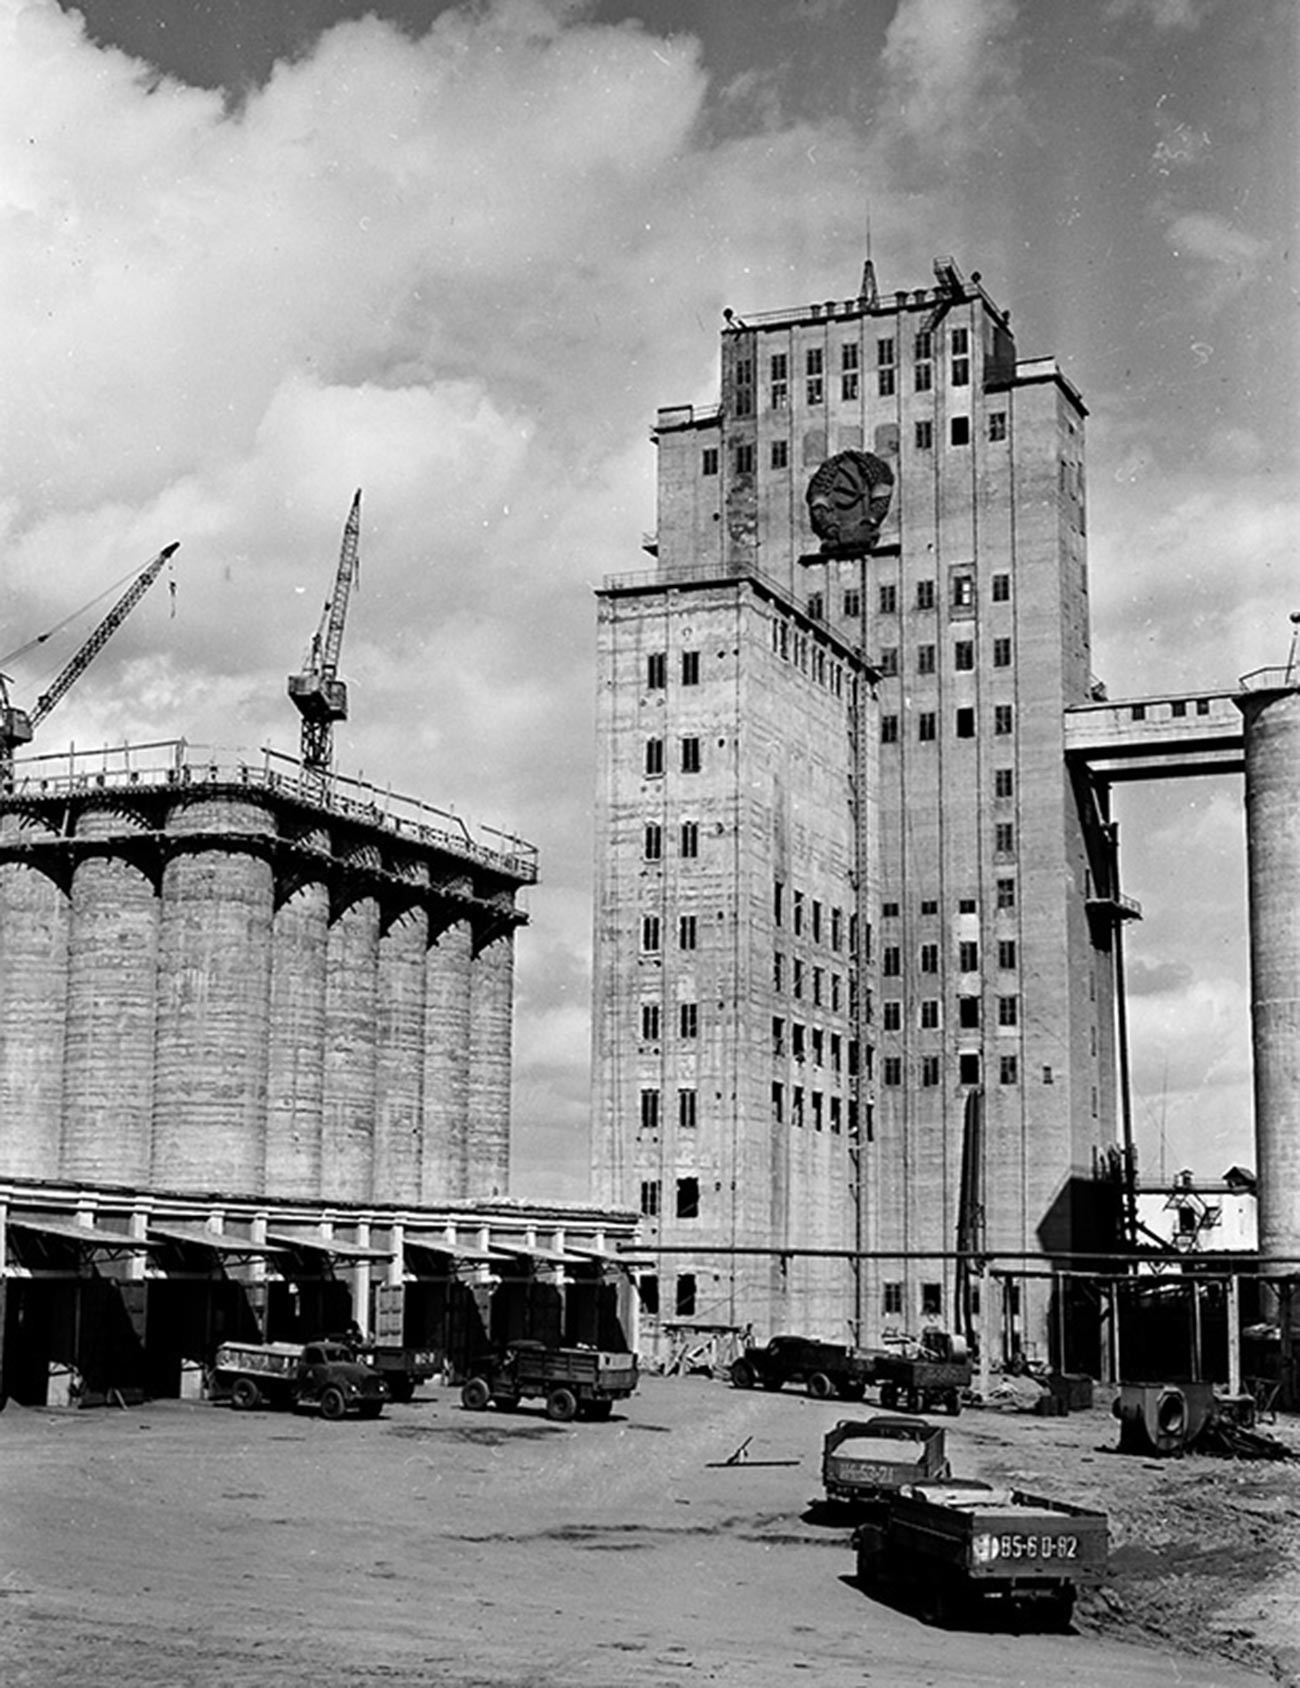 ソ連のエンブレムの入った大型穀物倉庫。カザフ・ソビエト社会主義共和国コスタナイ。1959年